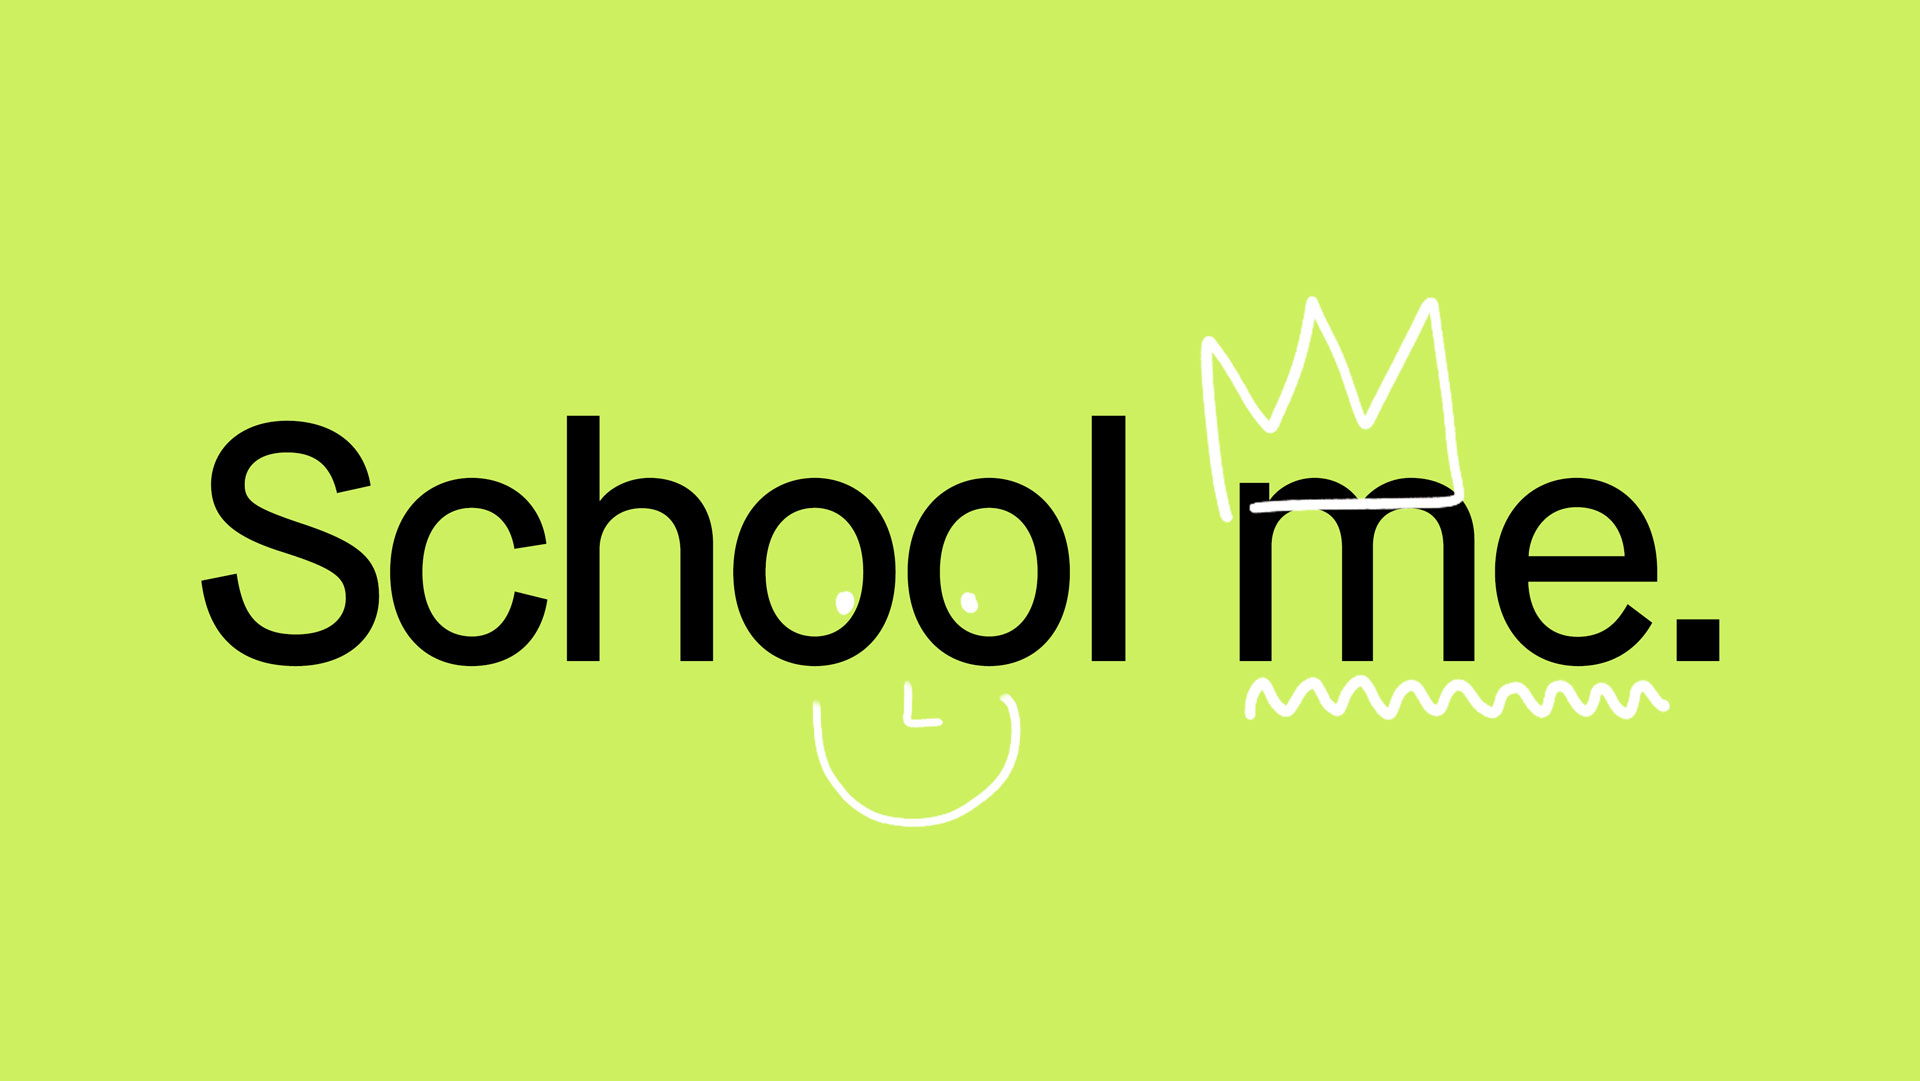 The School me primary logo